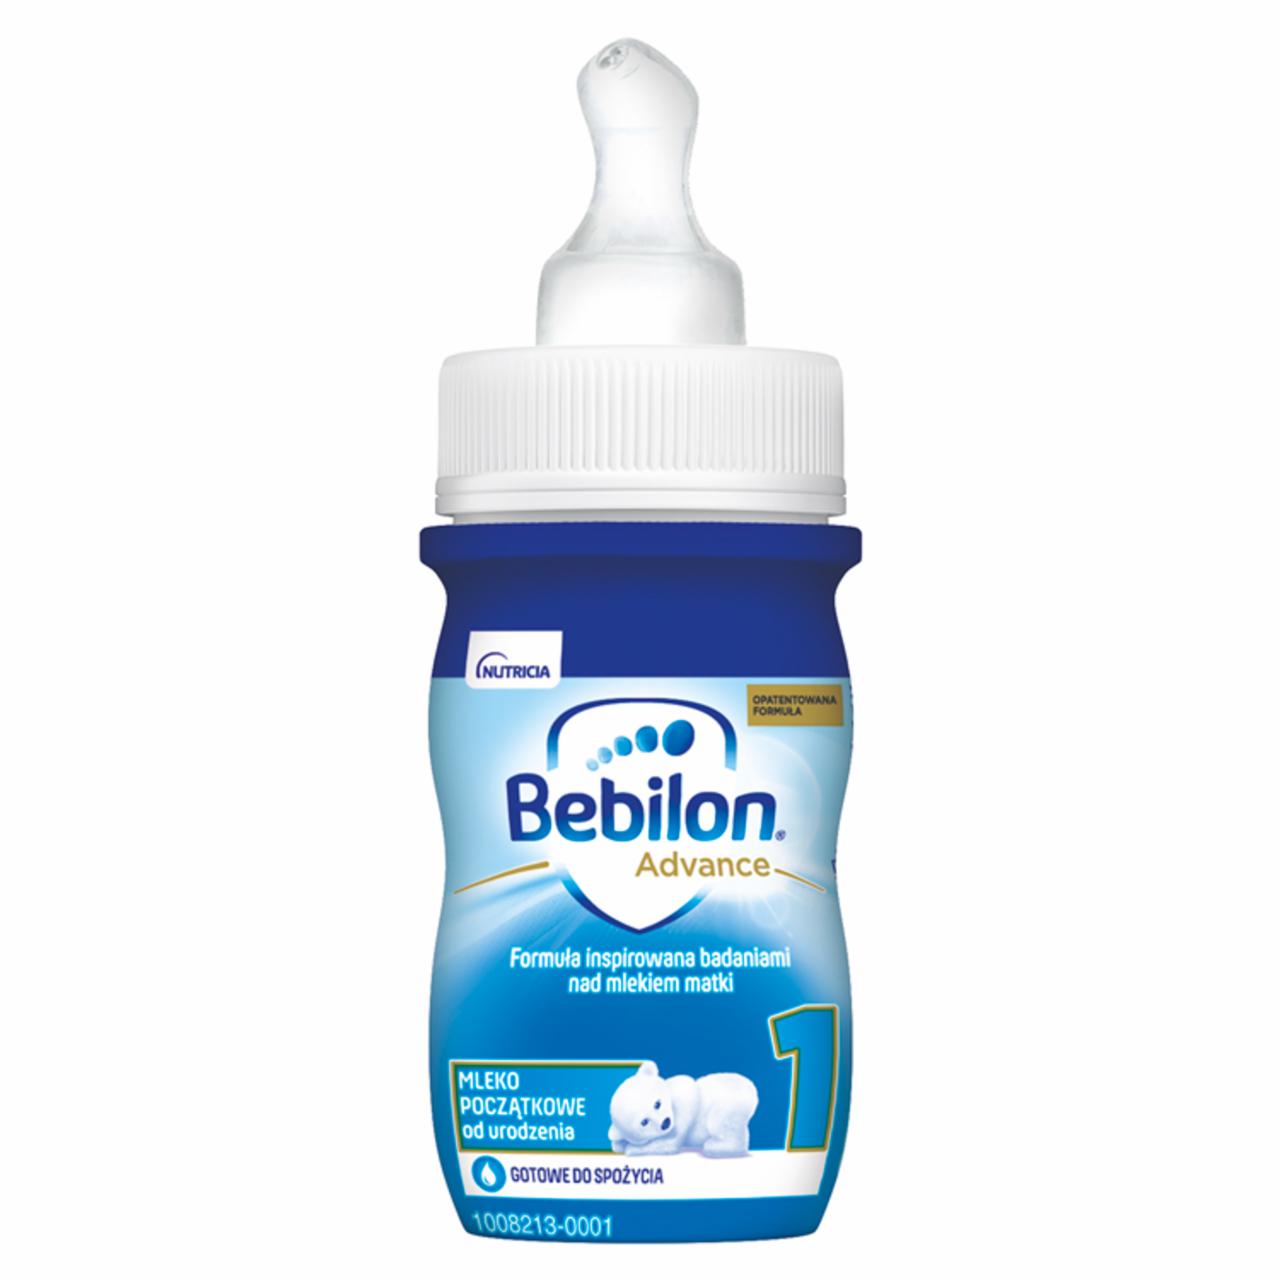 Zdjęcia - Bebilon 1 Pronutra-Advance Mleko początkowe od urodzenia 90 ml